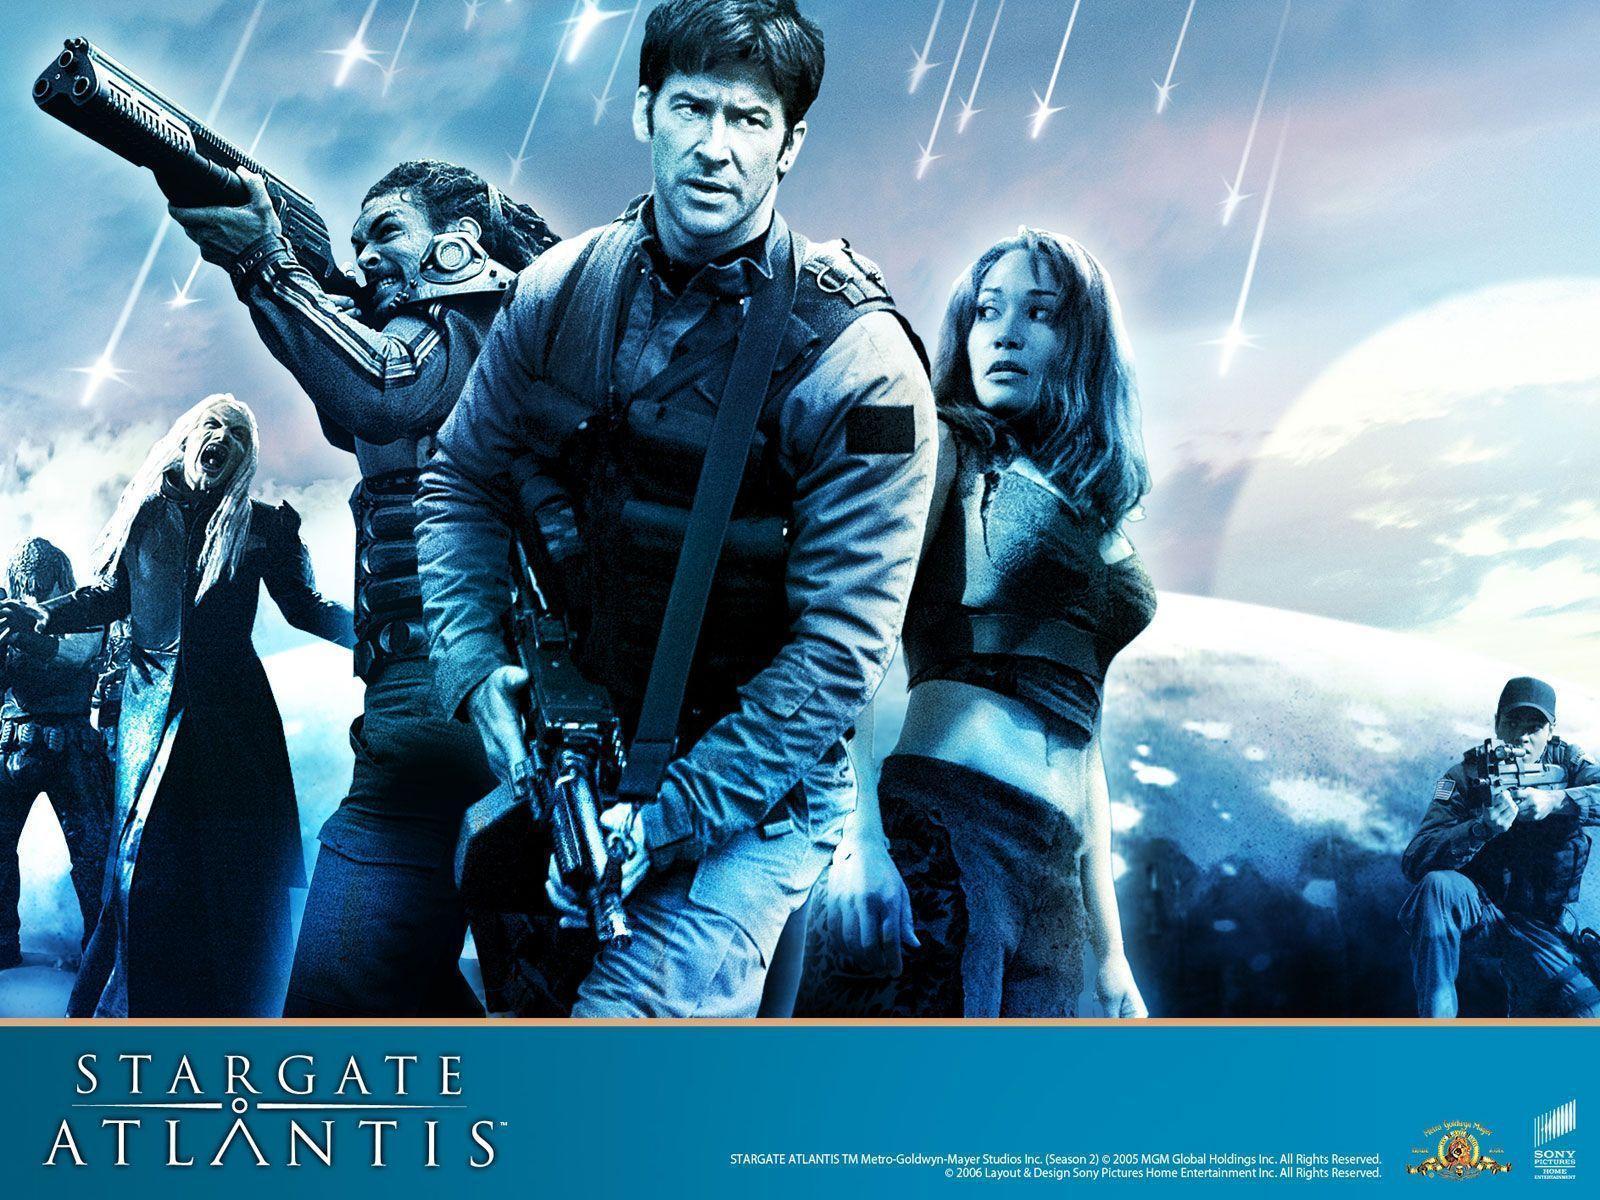 Stargate Archive Central: Stargate Atlantis, Stargate SG1